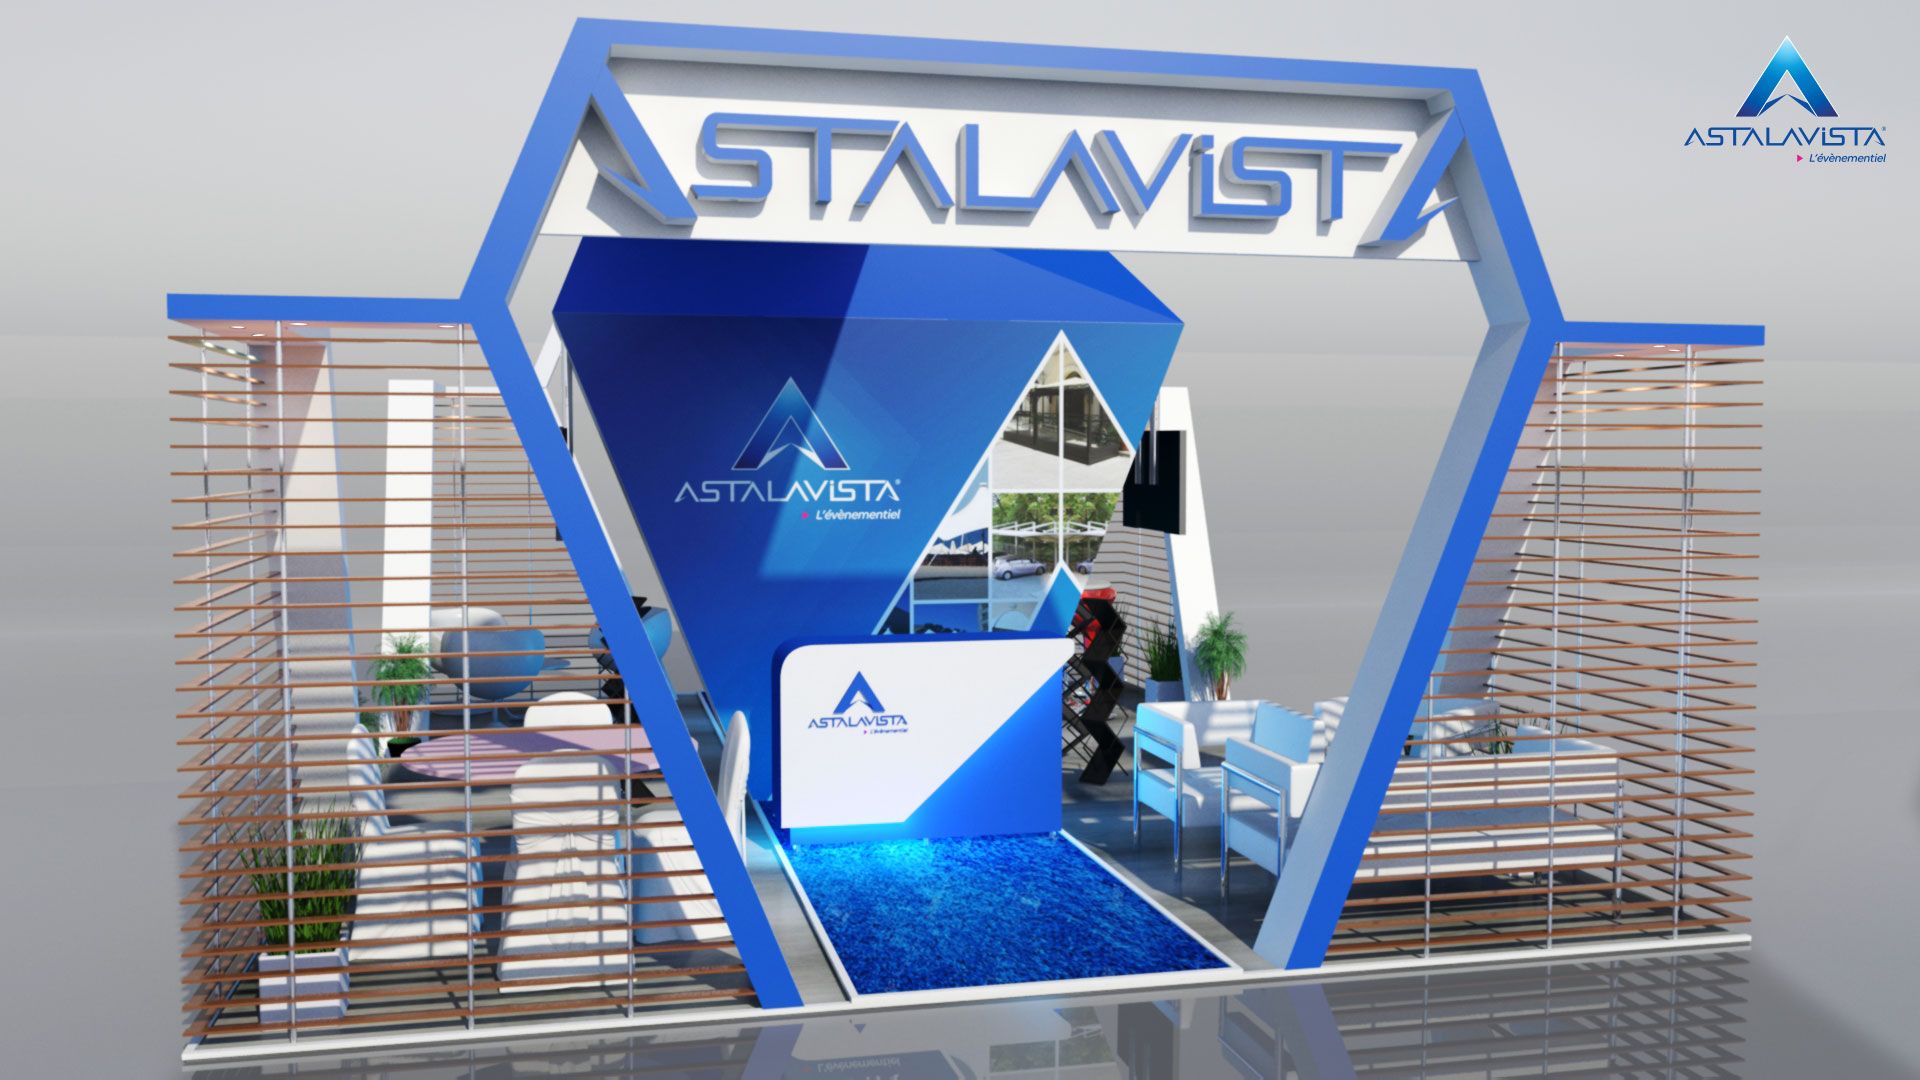 astalavista software free download